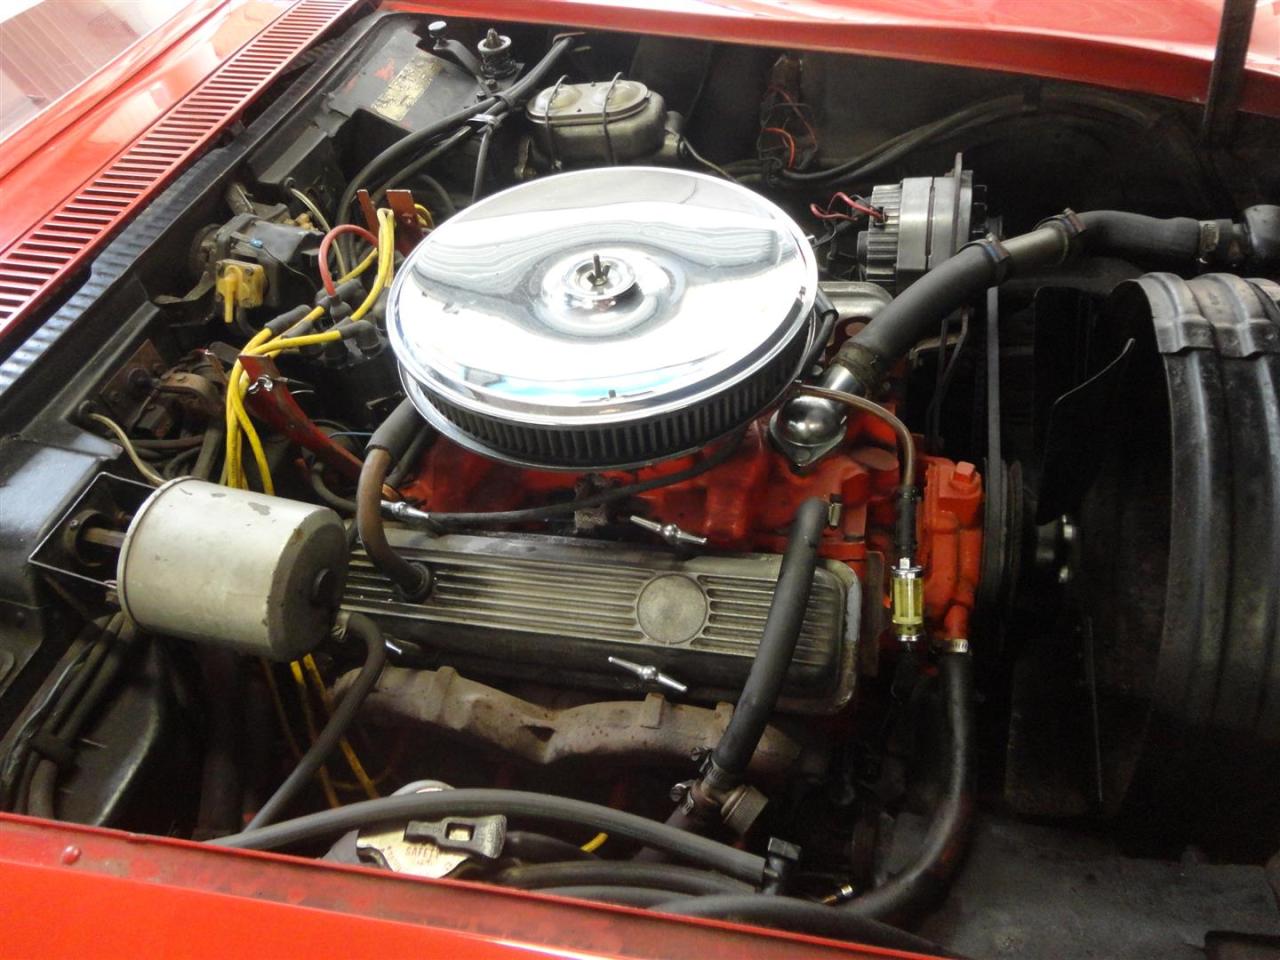 1969 Chevrolet Corvette &#039;&#039;69 Roadster Red